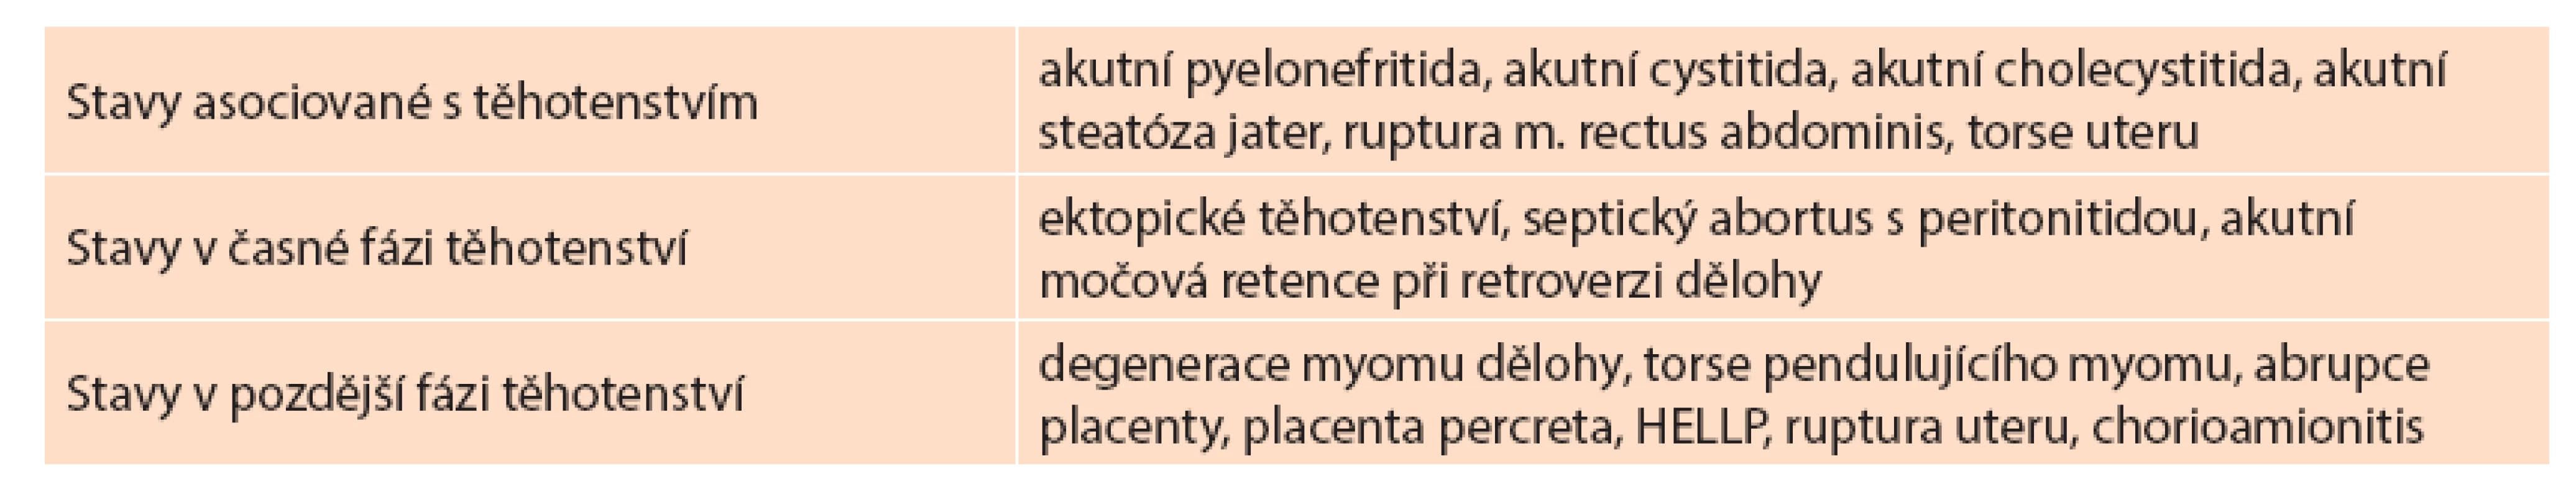 Diagnostické jednotky v příčinném vztahu k těhotenství
Tab. 2: Diagnostic units with causal relationship to pregnancy